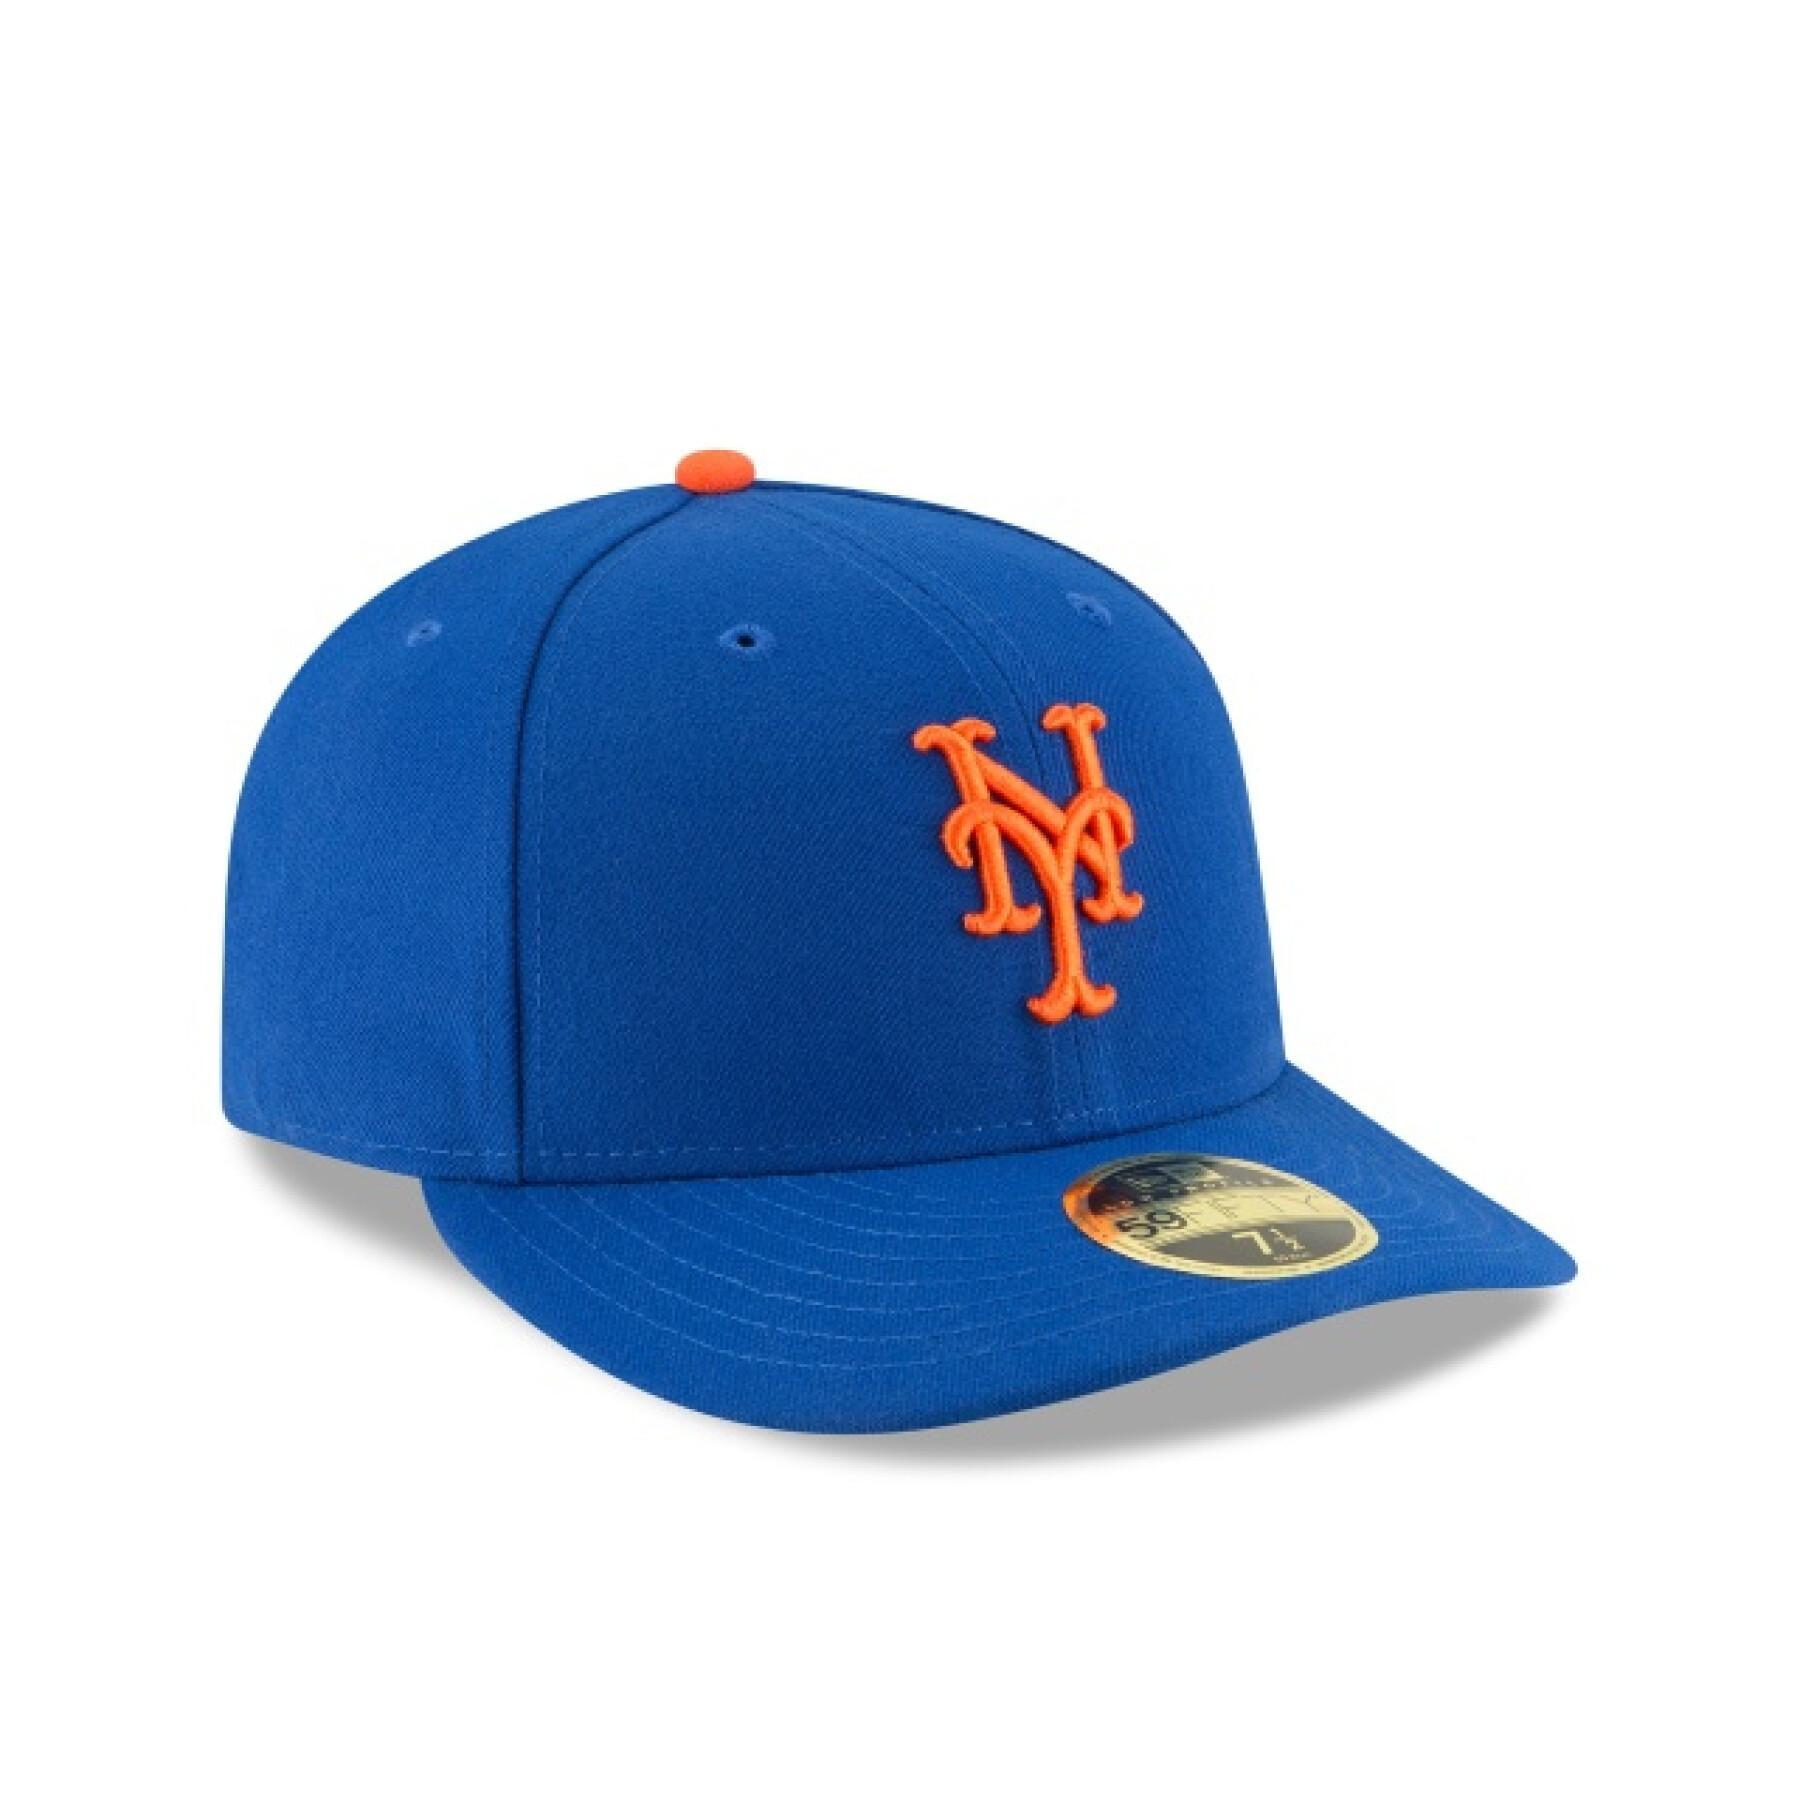 Cap New Era New York Mets Gm 2017